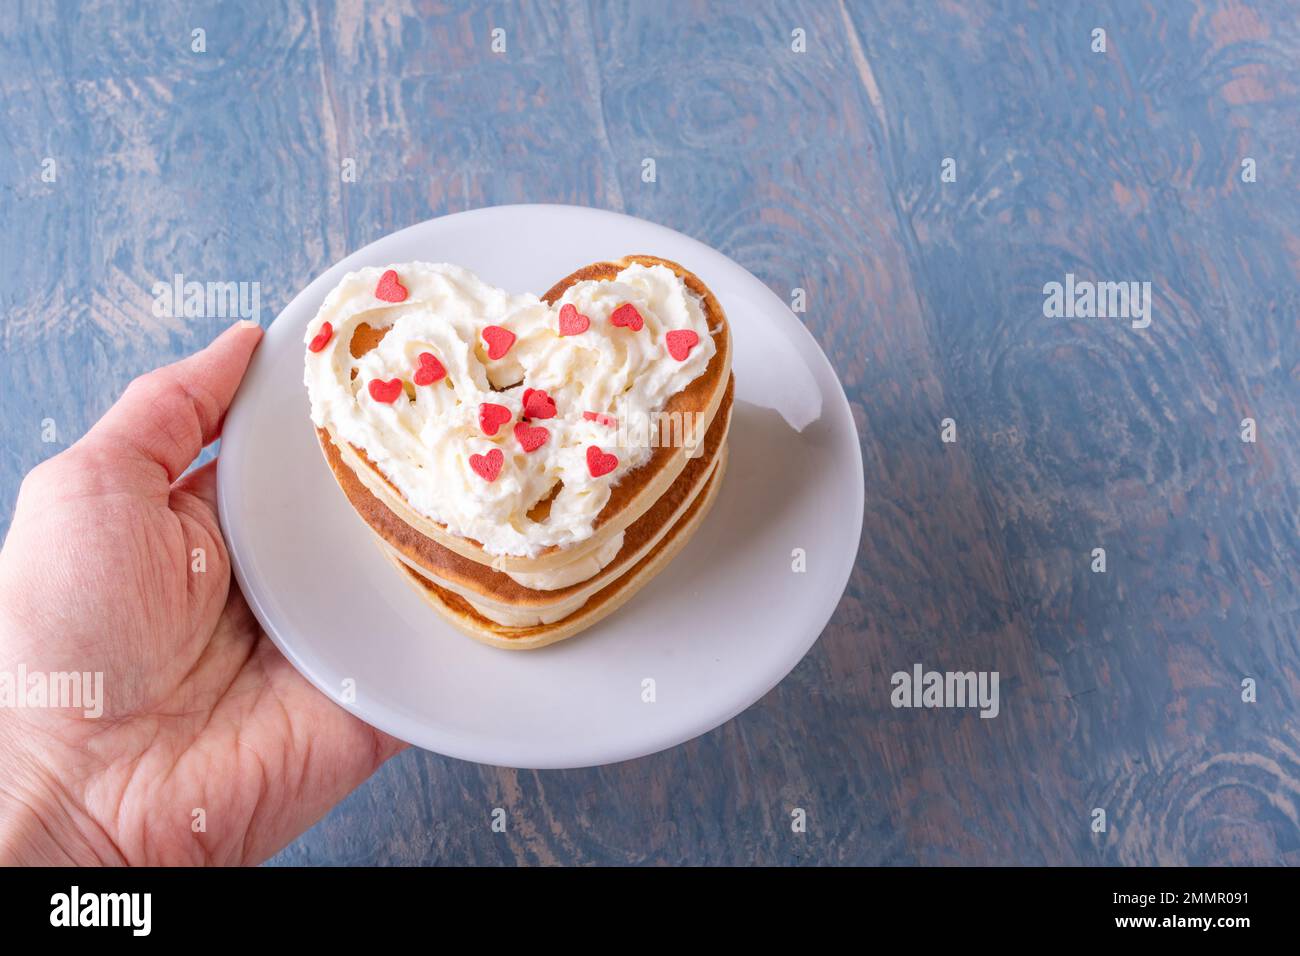 Kreatives Frühstück am Valentinstag. Weibliche Hand hält einen weißen Teller mit einem Stapel hausgemachter herzförmiger Pfannkuchen, dekoriert mit weißer Creme und Stockfoto